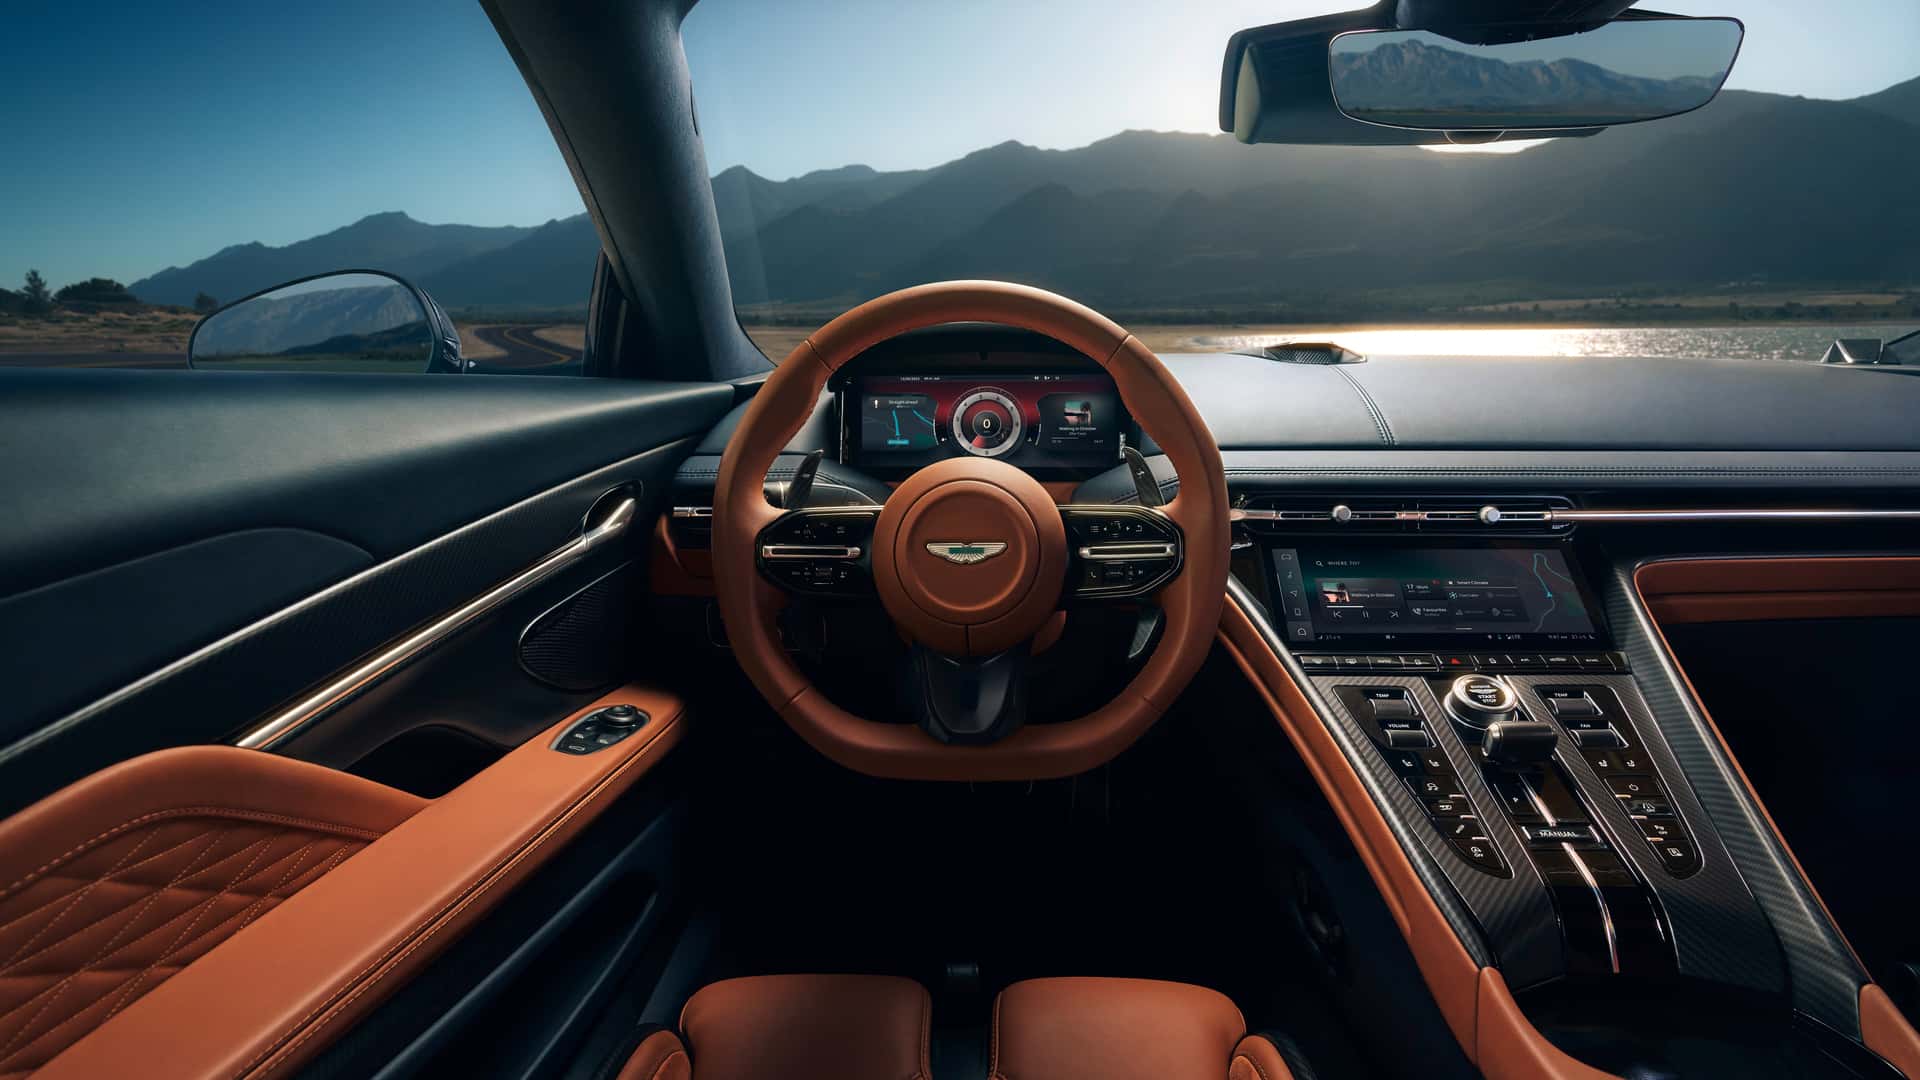 Aston Martin chính thức chào hàng giới đại gia siêu phẩm DB12 hoàn toàn mới - Ảnh 4.